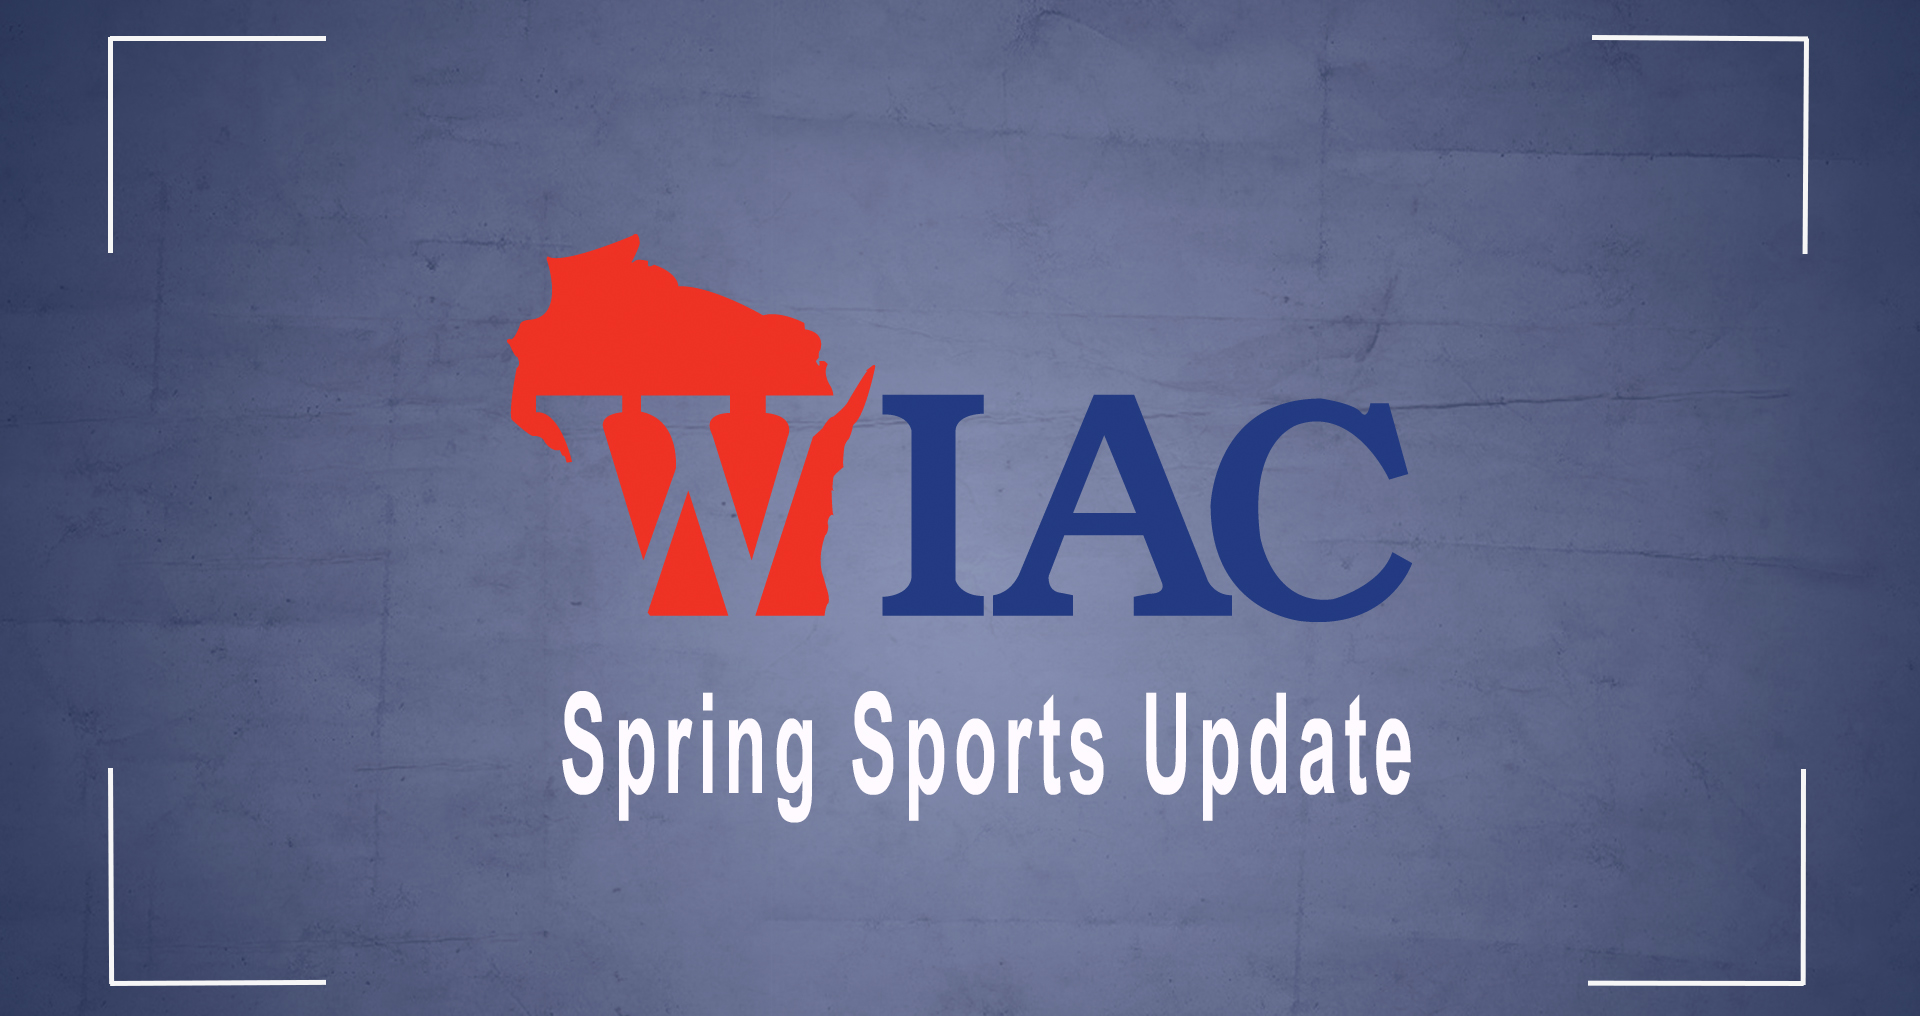 WIAC Spring Sports Update